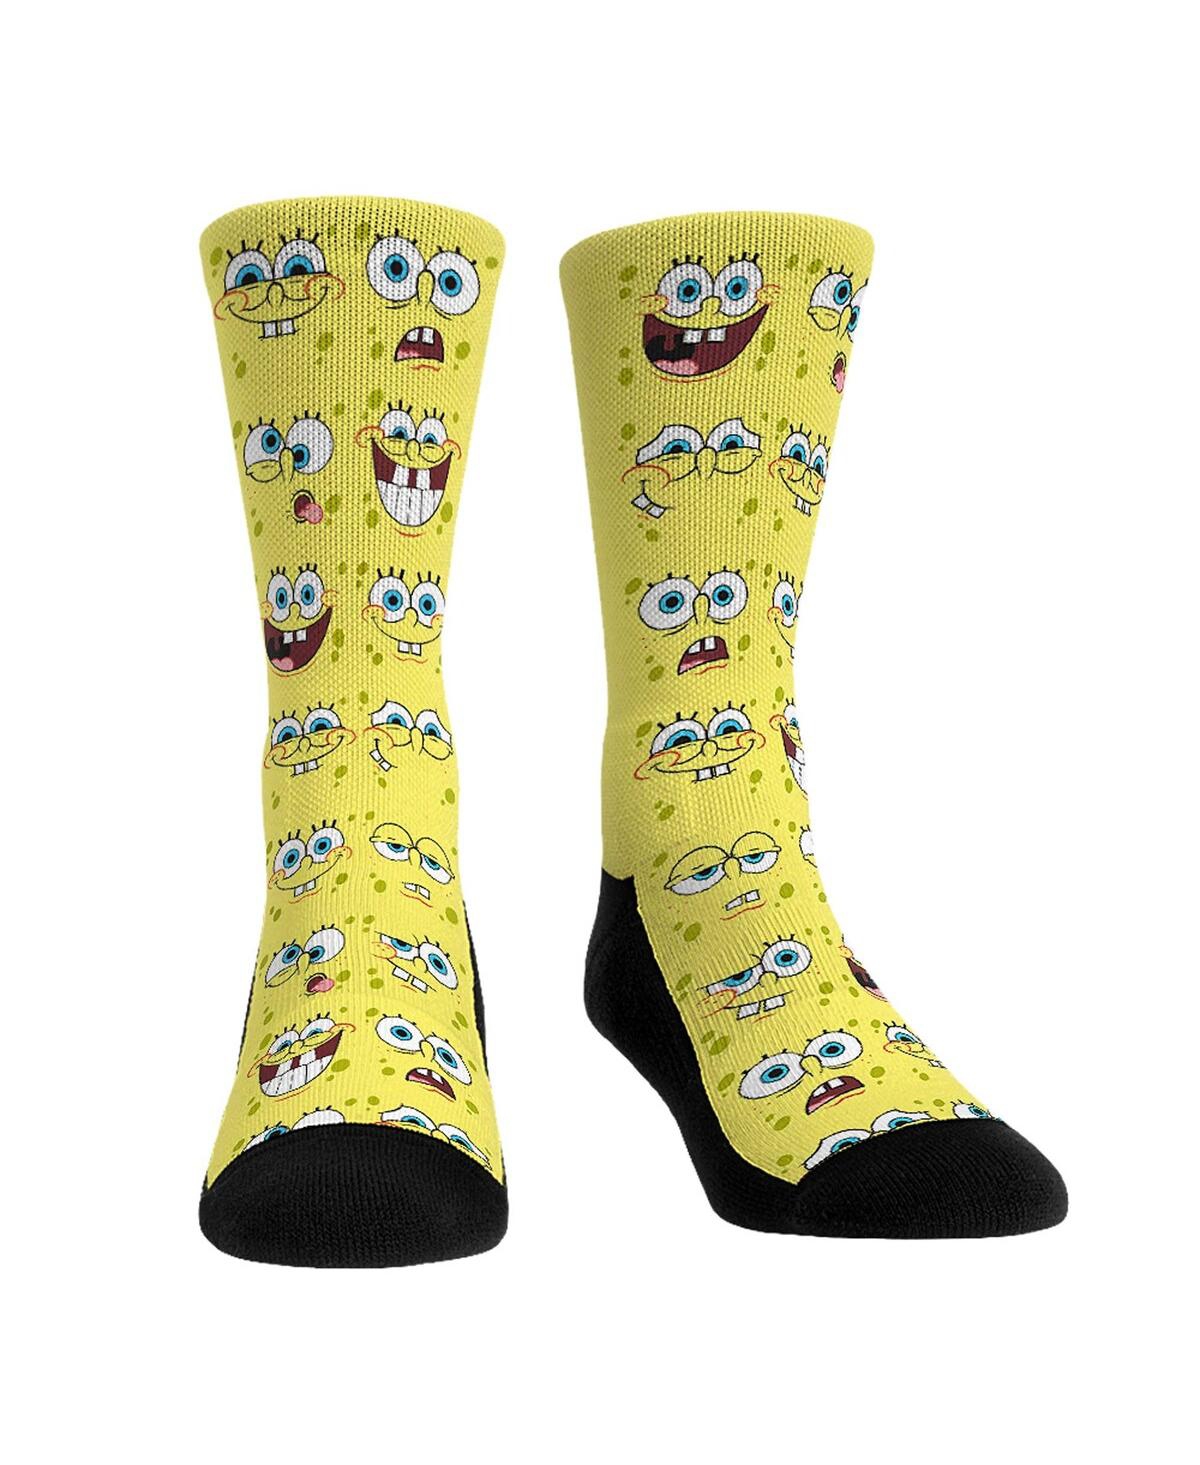 Men's and Women's Rock 'Em Socks SpongeBob Square Pants Face All Over Crew Socks - Multi